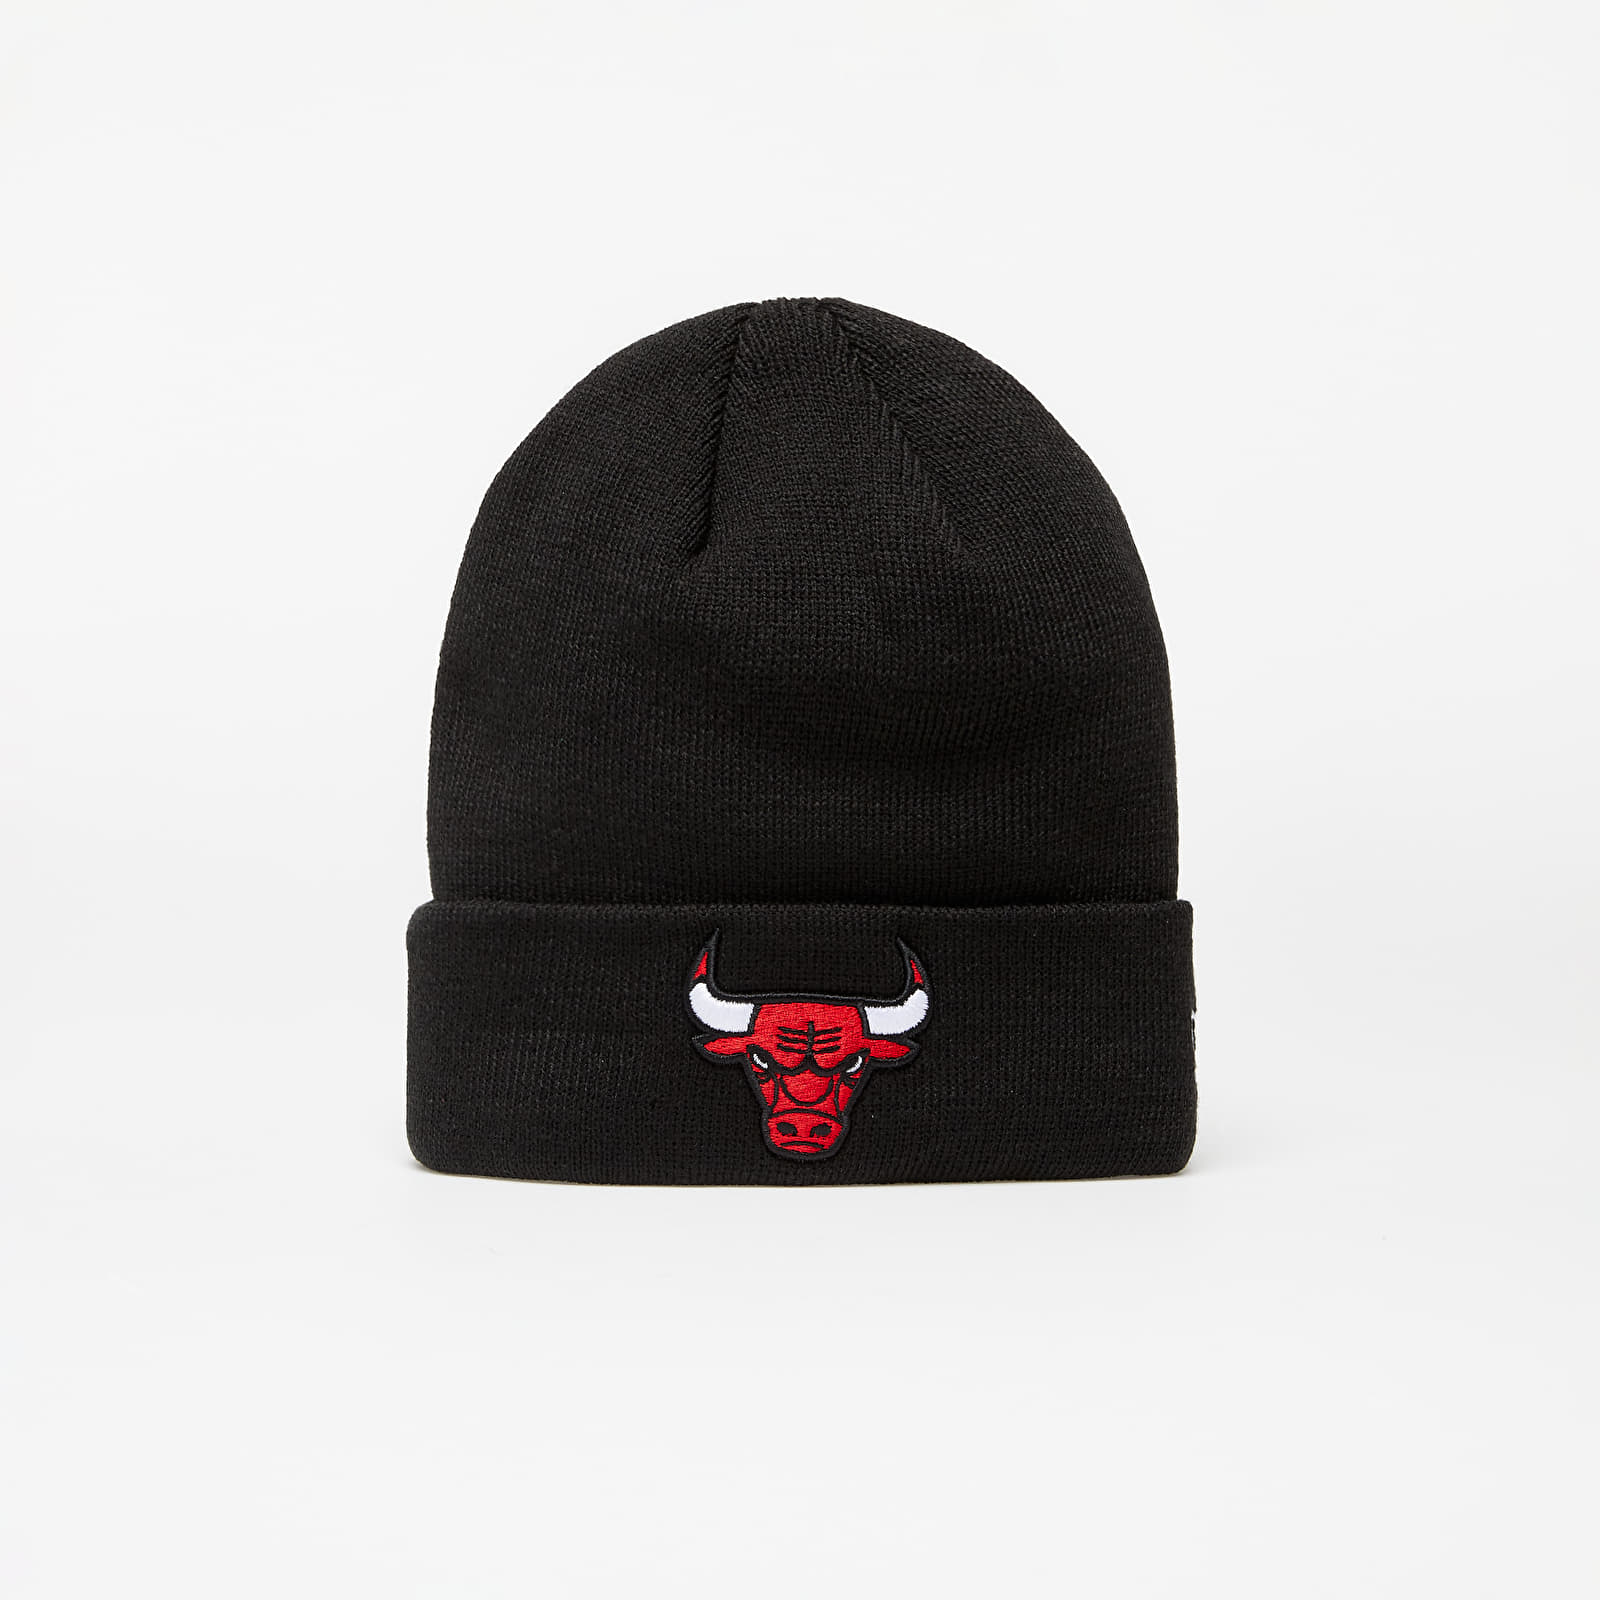 Hats New Era NBA Chicago Bulls Essential Cuff Knit Black